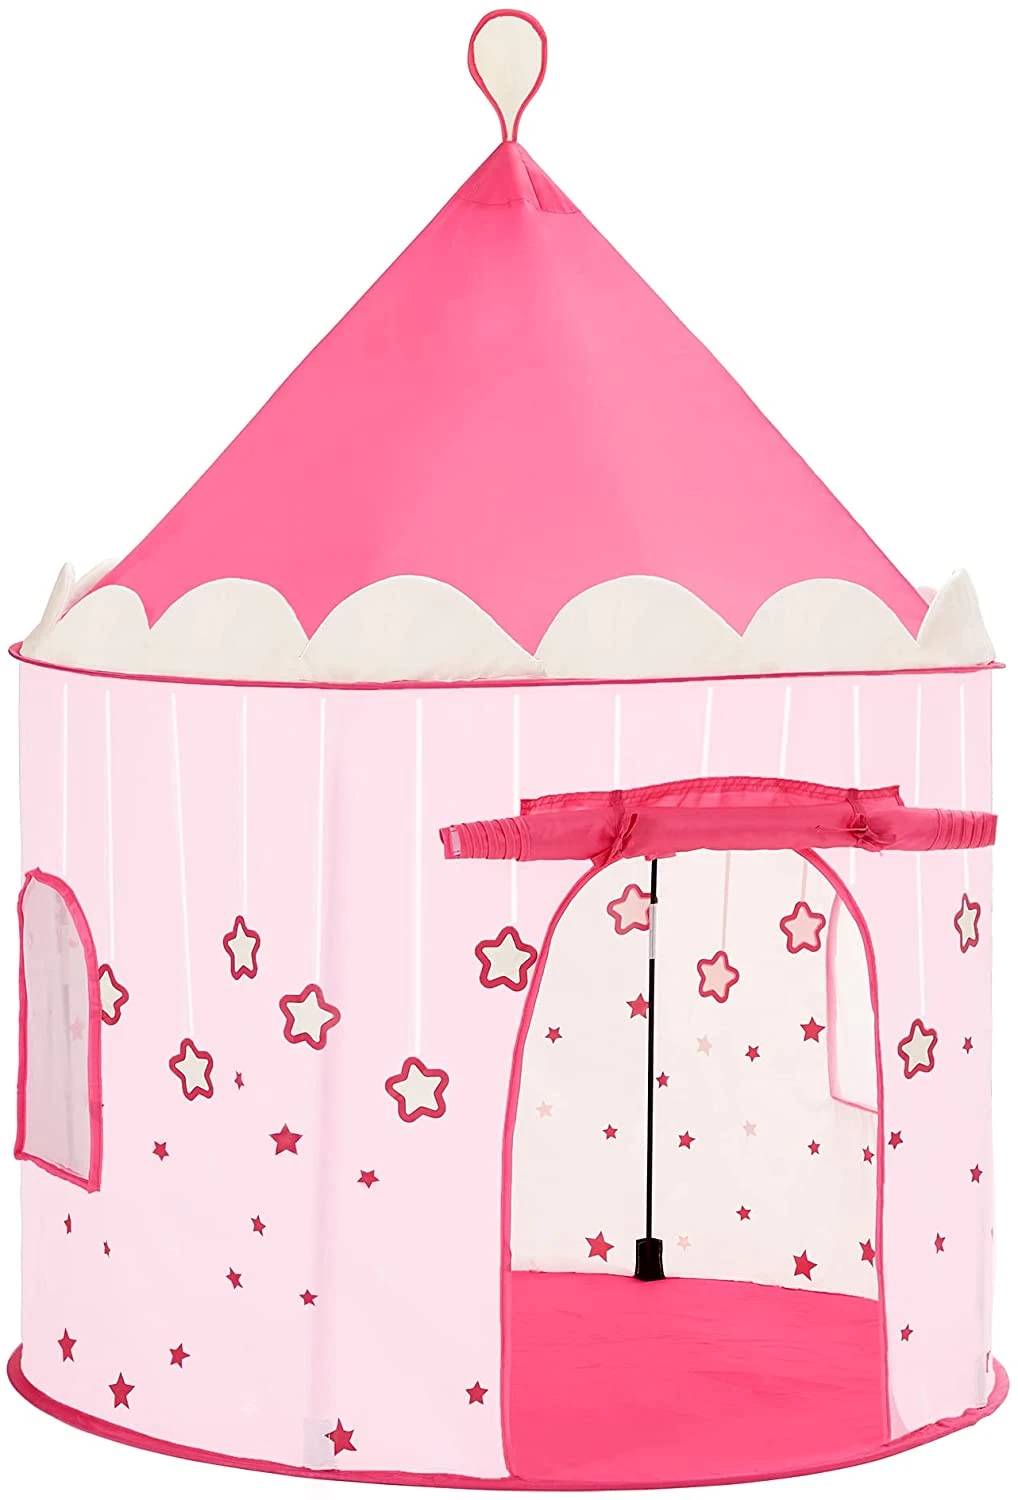 Odysseus Kameraad grijs Speeltent, prinsessenkasteel voor meisjes, peuters, speelhuisje voor binnen  en buiten, Pop-UP indianentent met draagtas, geschenk voor kinderen, roze -  SimpleDeal.nl